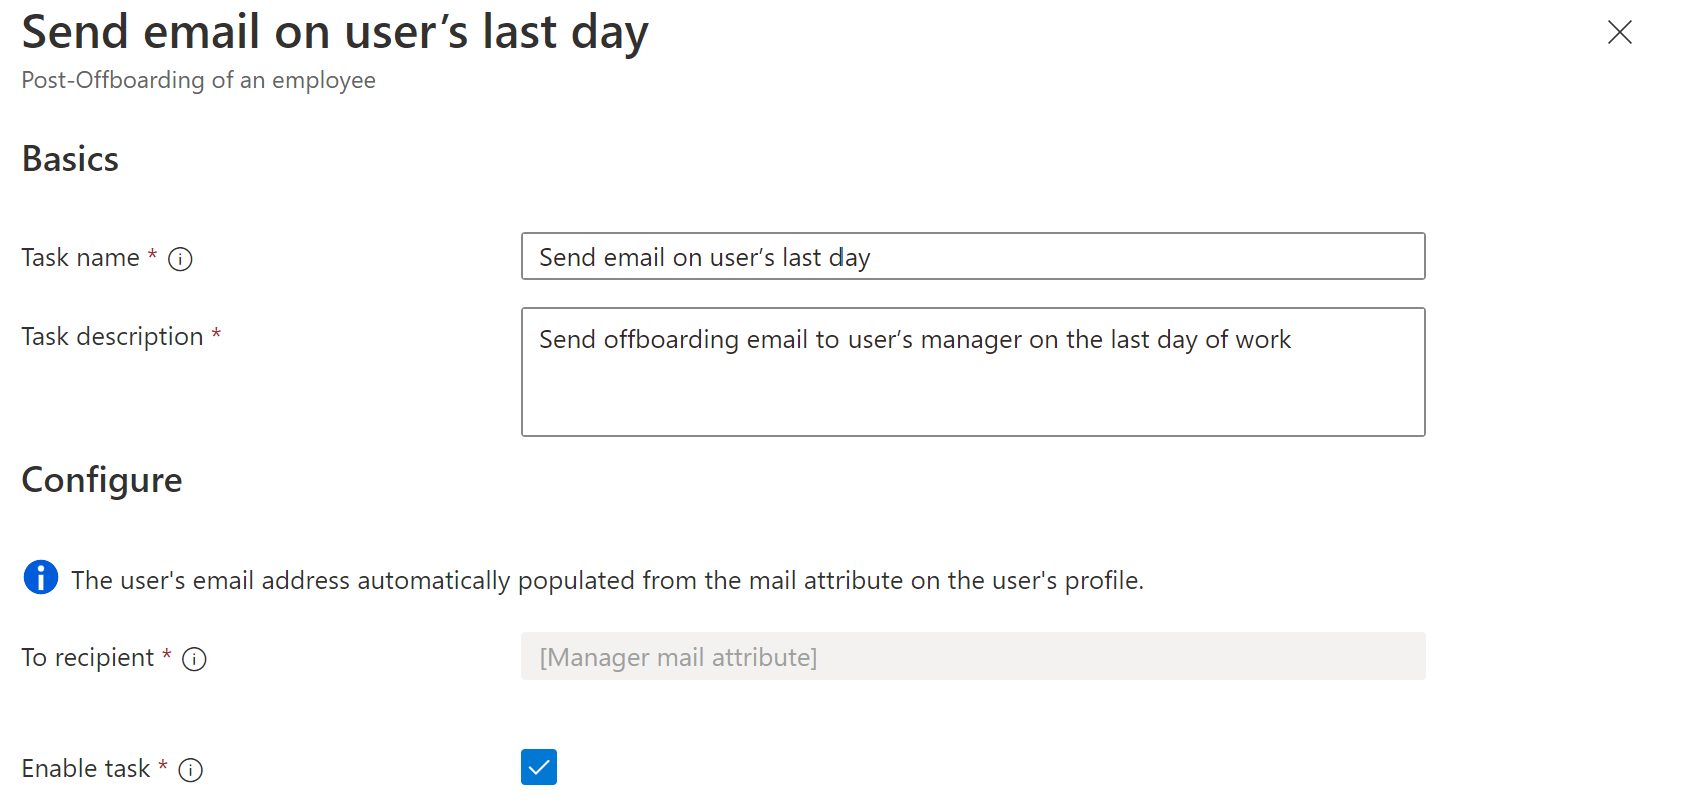 Снимок экрана: задача рабочего процесса: отправка сообщения по электронной почте в последний день работы.